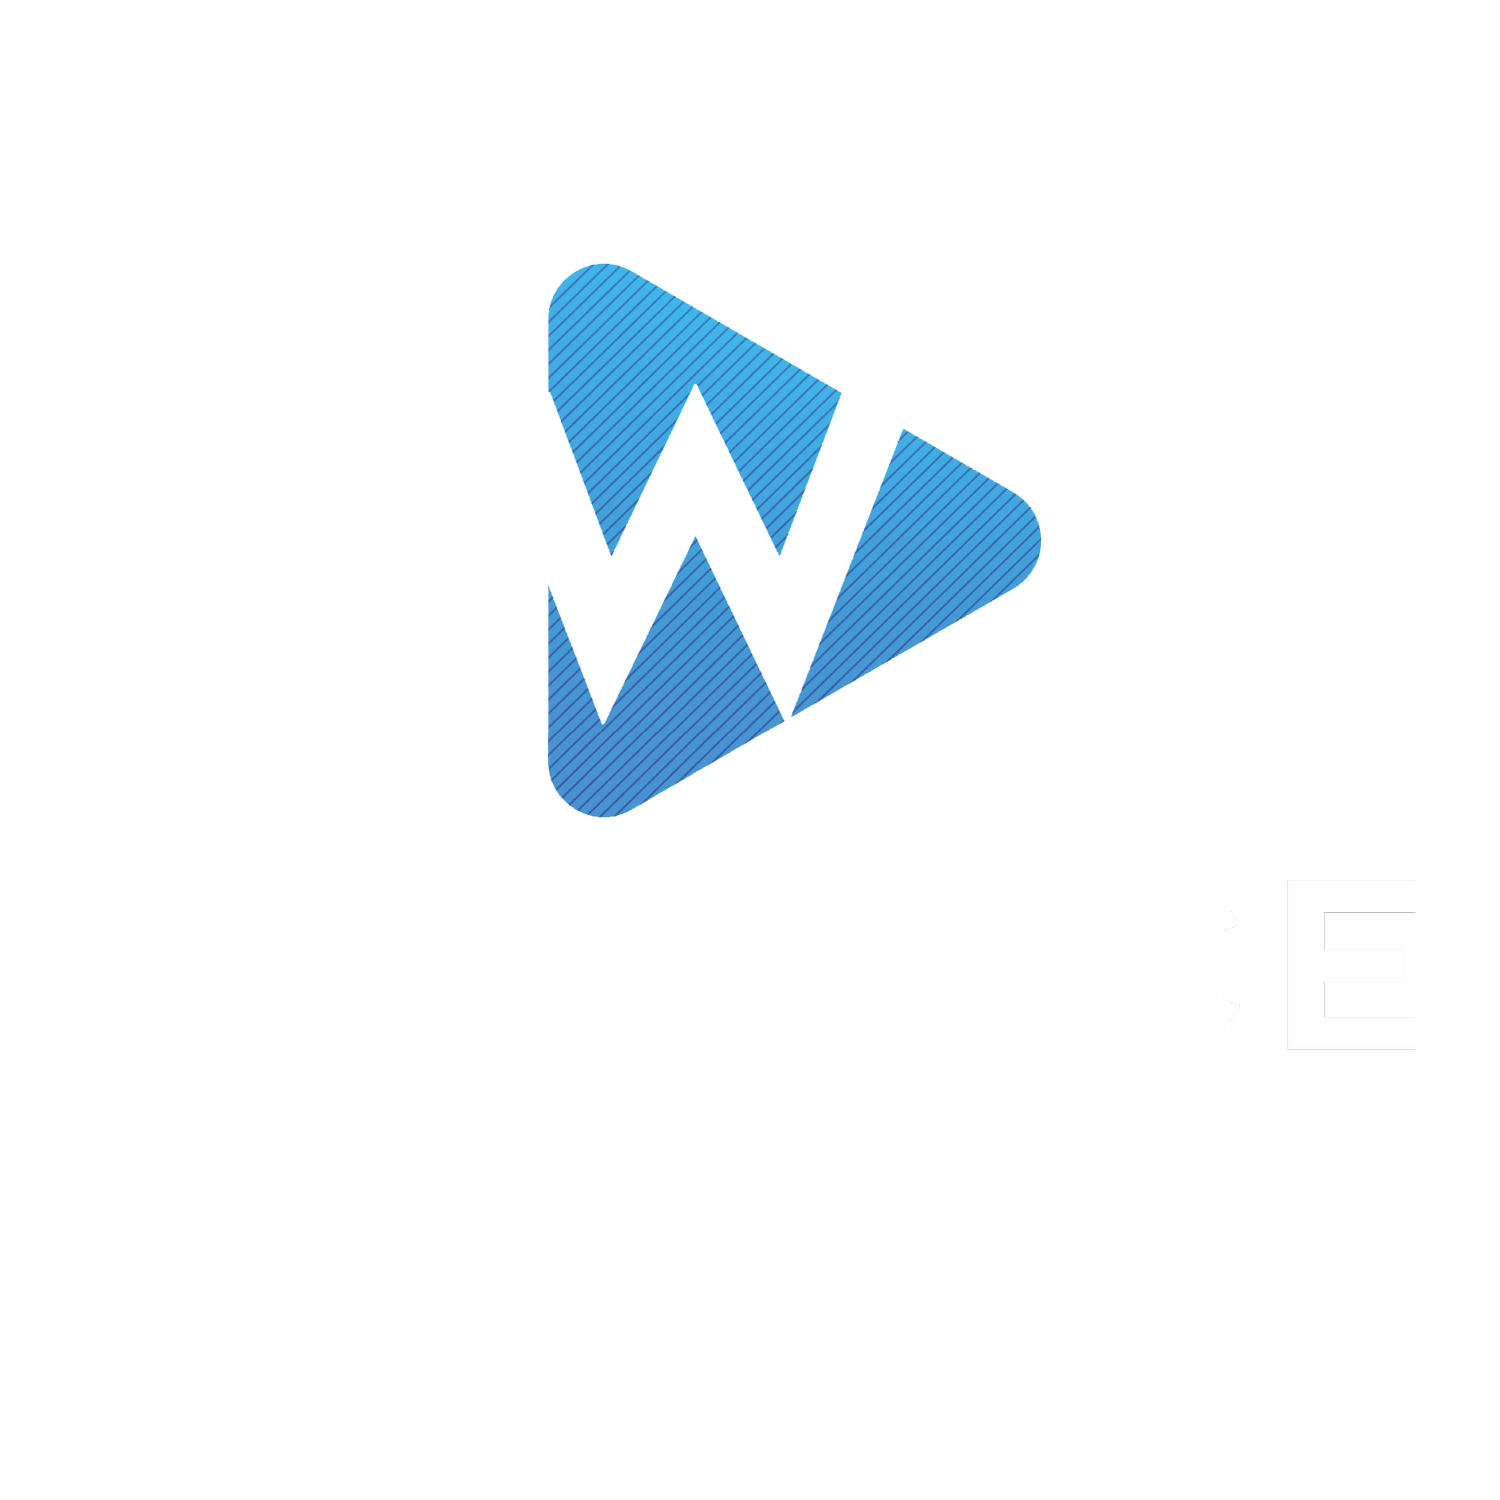 The Wallace Media Company